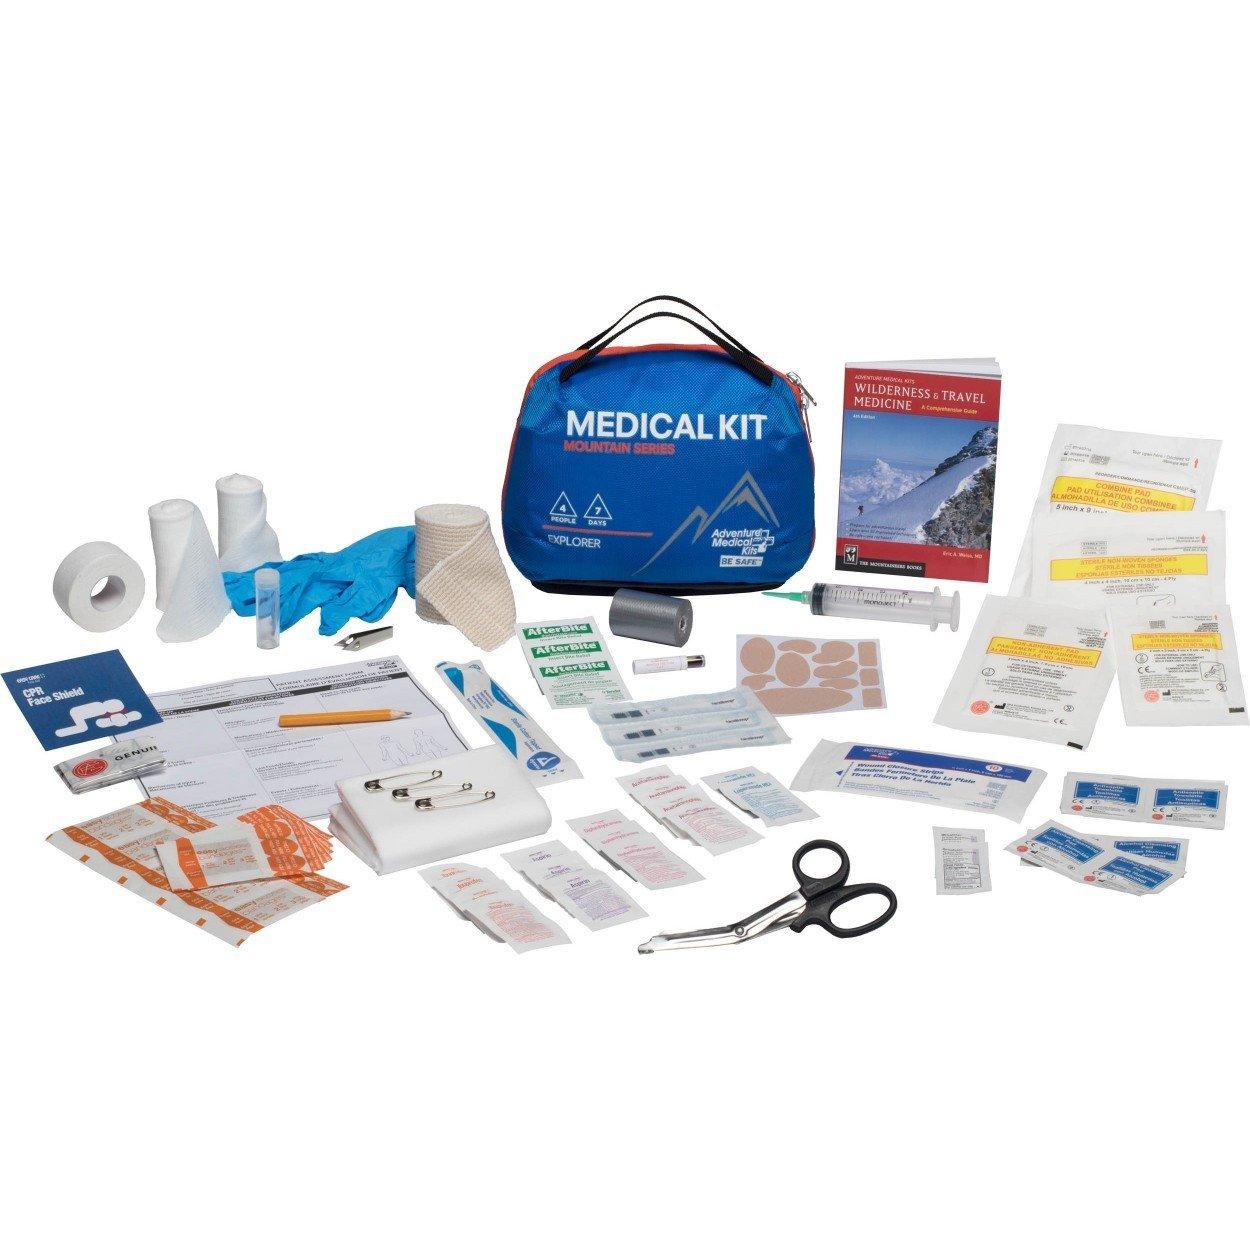 Mountain Series Explorer First Aid Kit